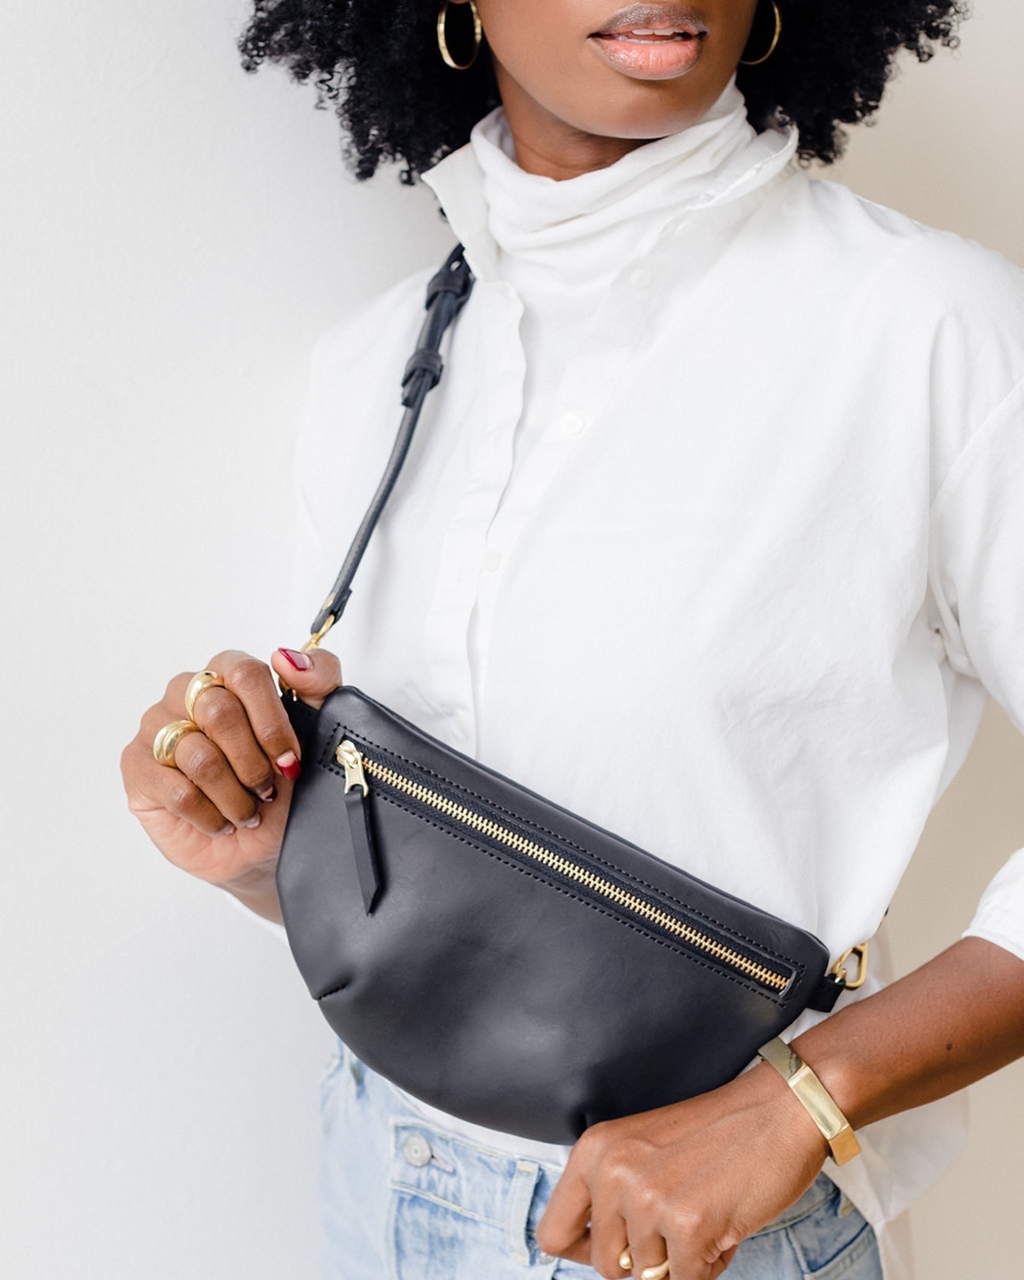 Webbing Wristlet Key chain Black – Urban Status Handbags